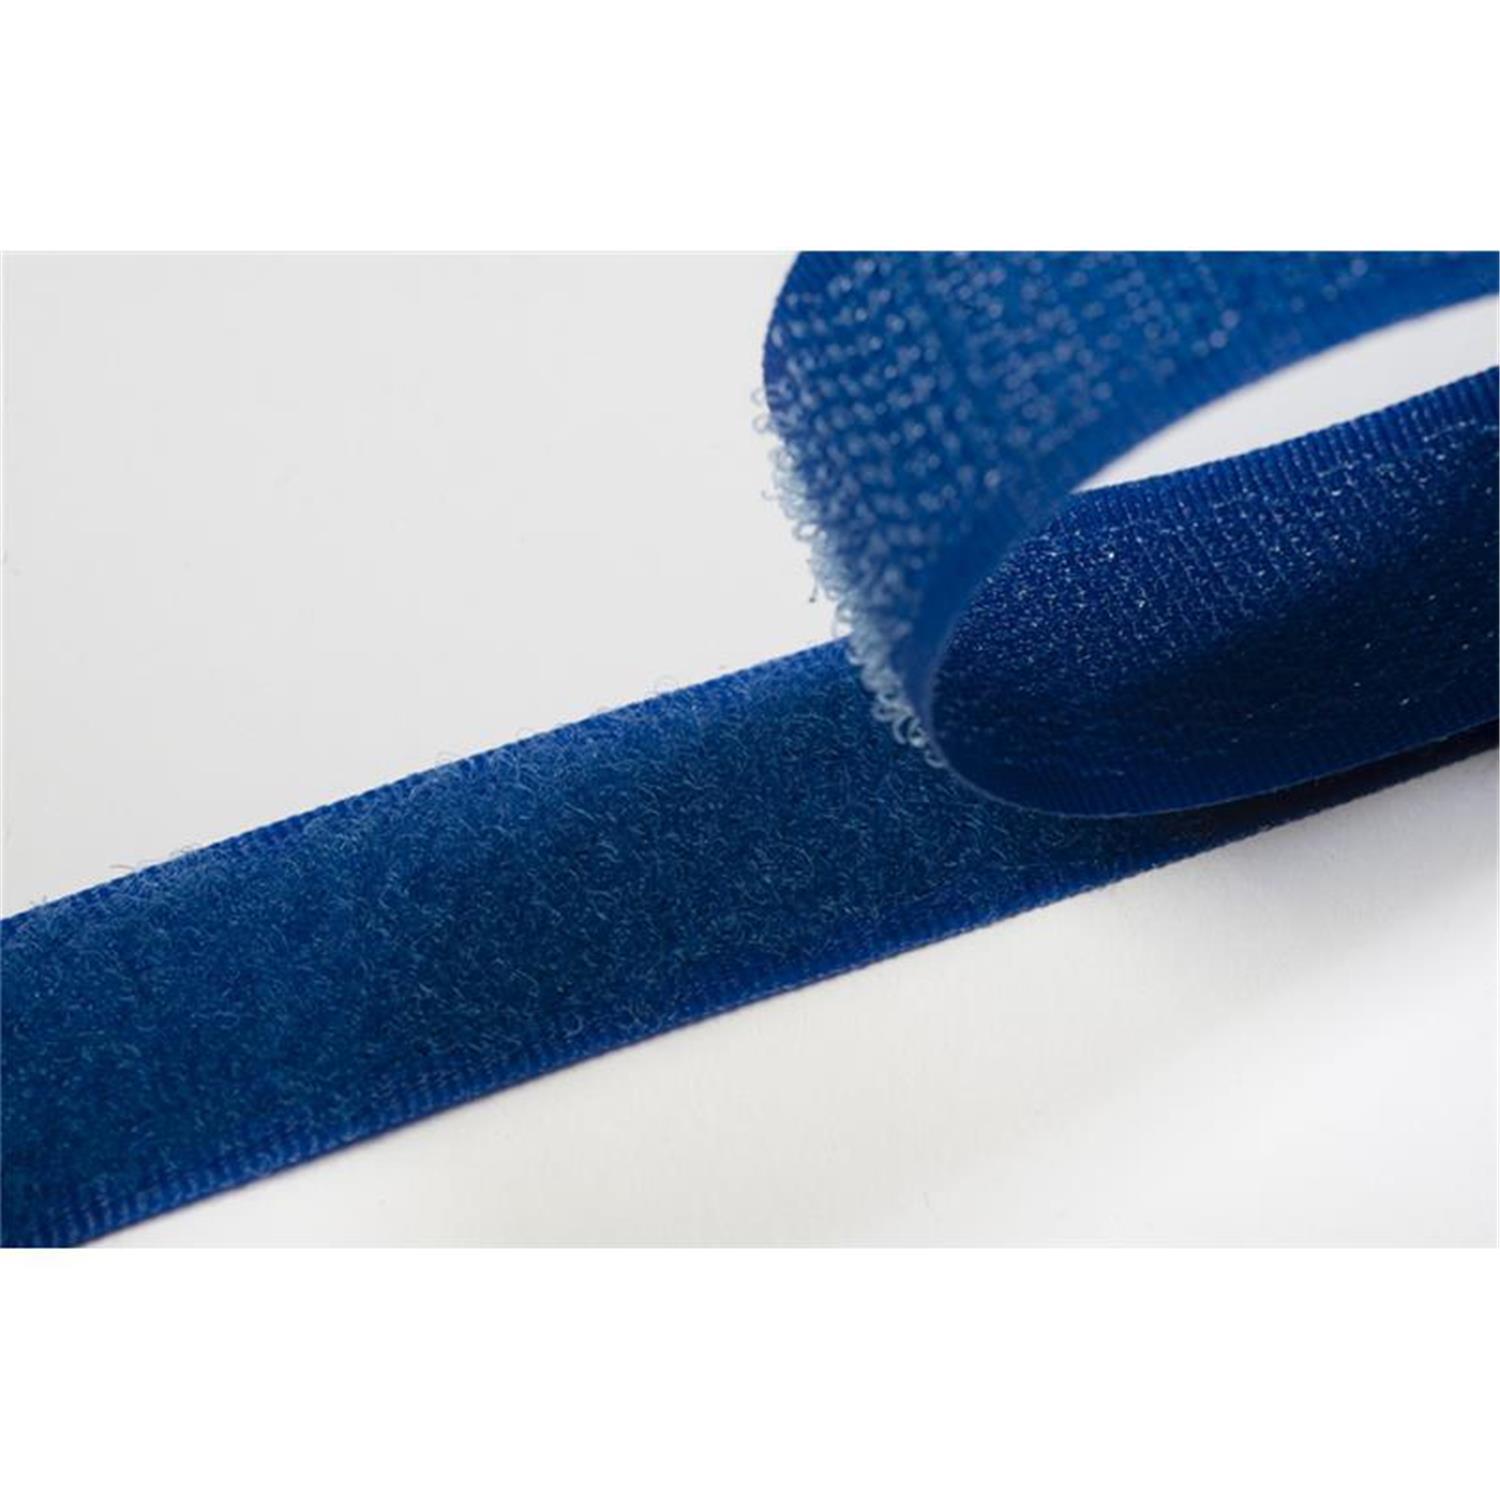 Klettband zum aufnähen, 20 mm, royalblau #26 4 Meter